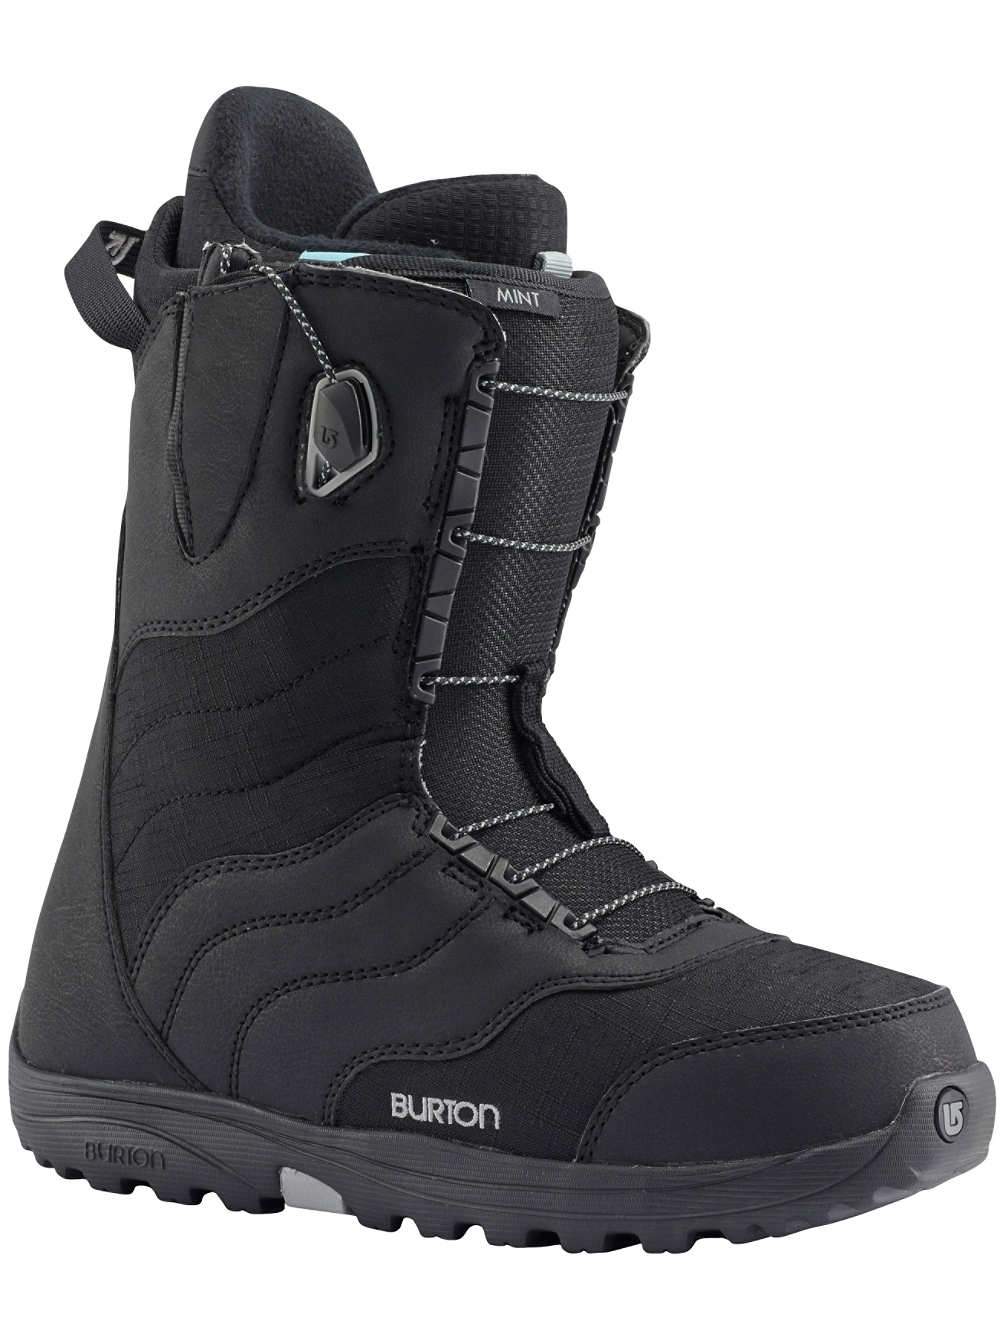 Burton Mint Ladies Snowboard Boots 2018